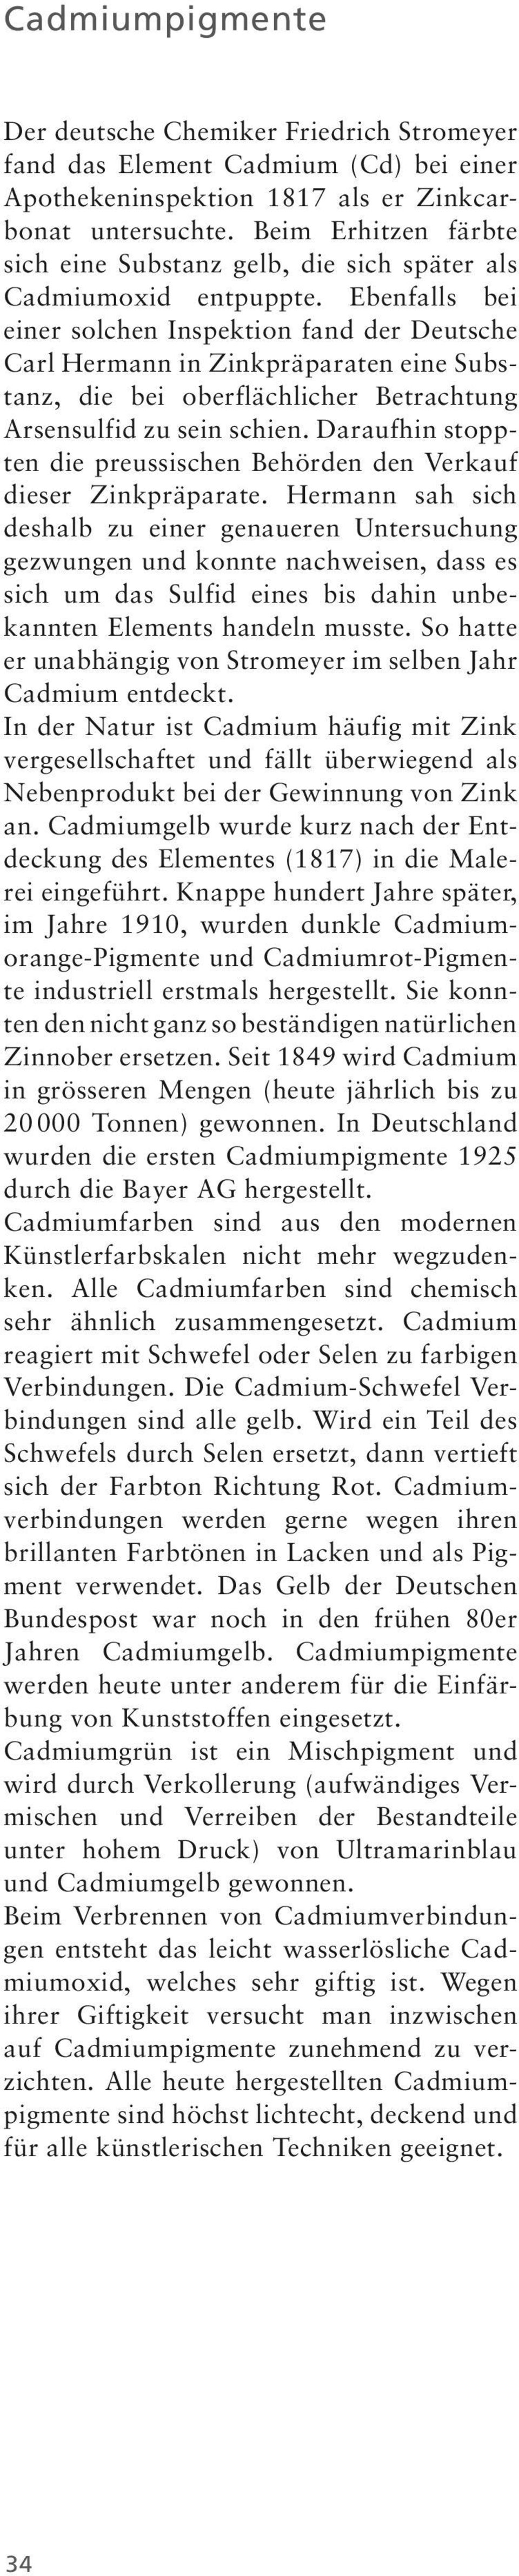 Ebenfalls bei einer solchen Inspektion fand der Deutsche Carl Hermann in Zinkpräparaten eine Substanz, die bei oberflächlicher Betrachtung Arsensulfid zu sein schien.